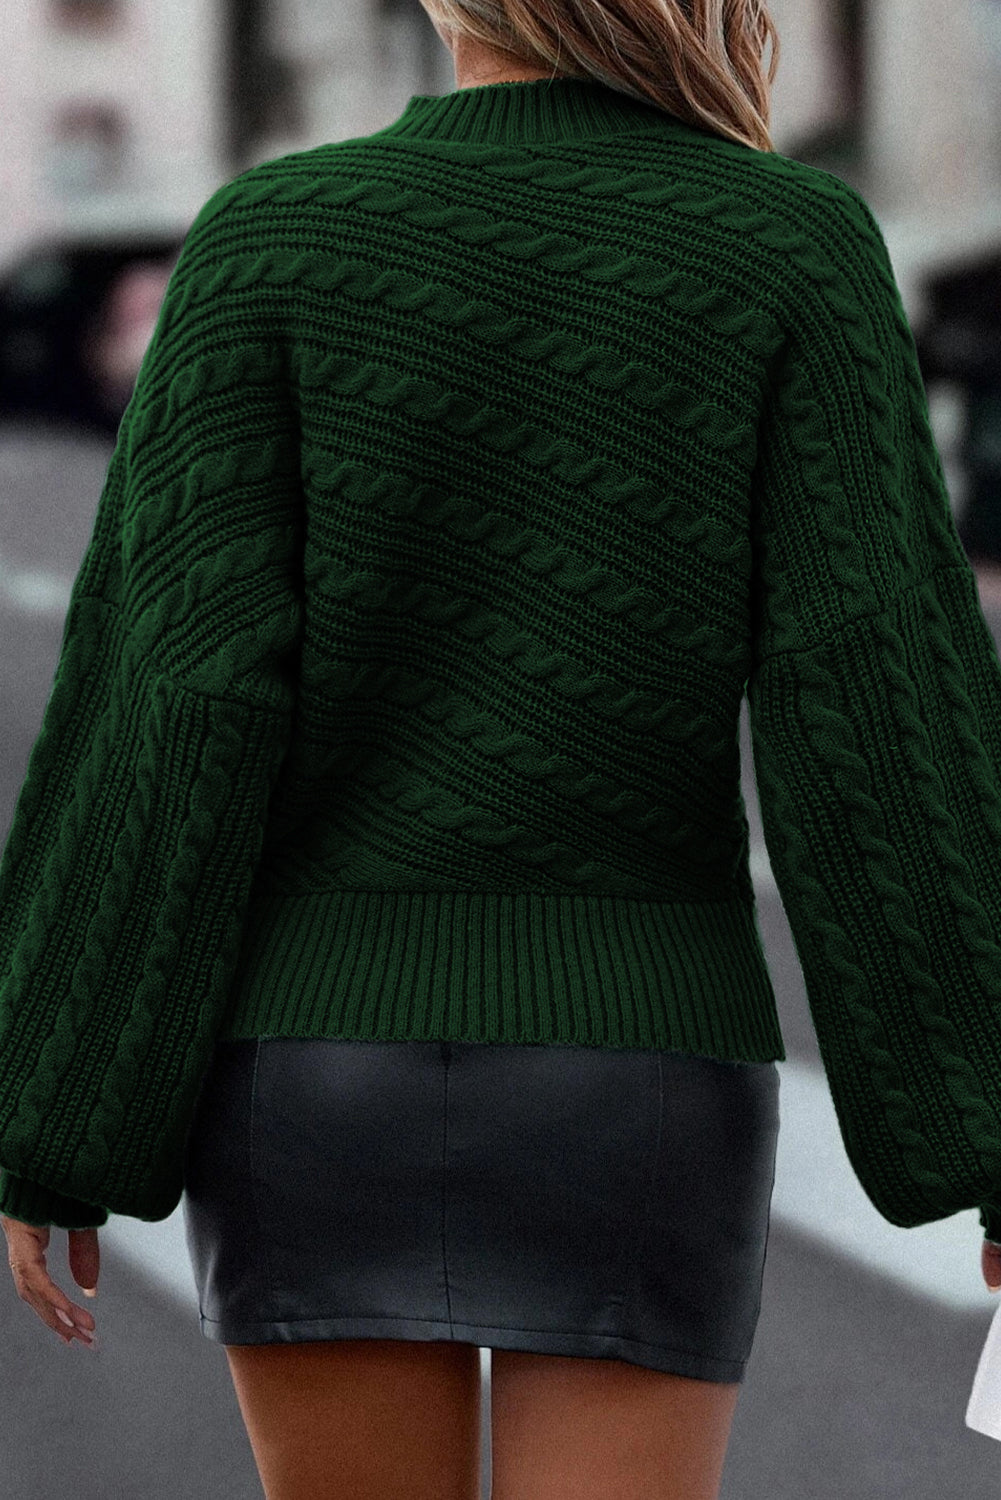 Maglione lavorato a maglia a trecce con maniche a lanterna con collo a lupetto verde nerastro